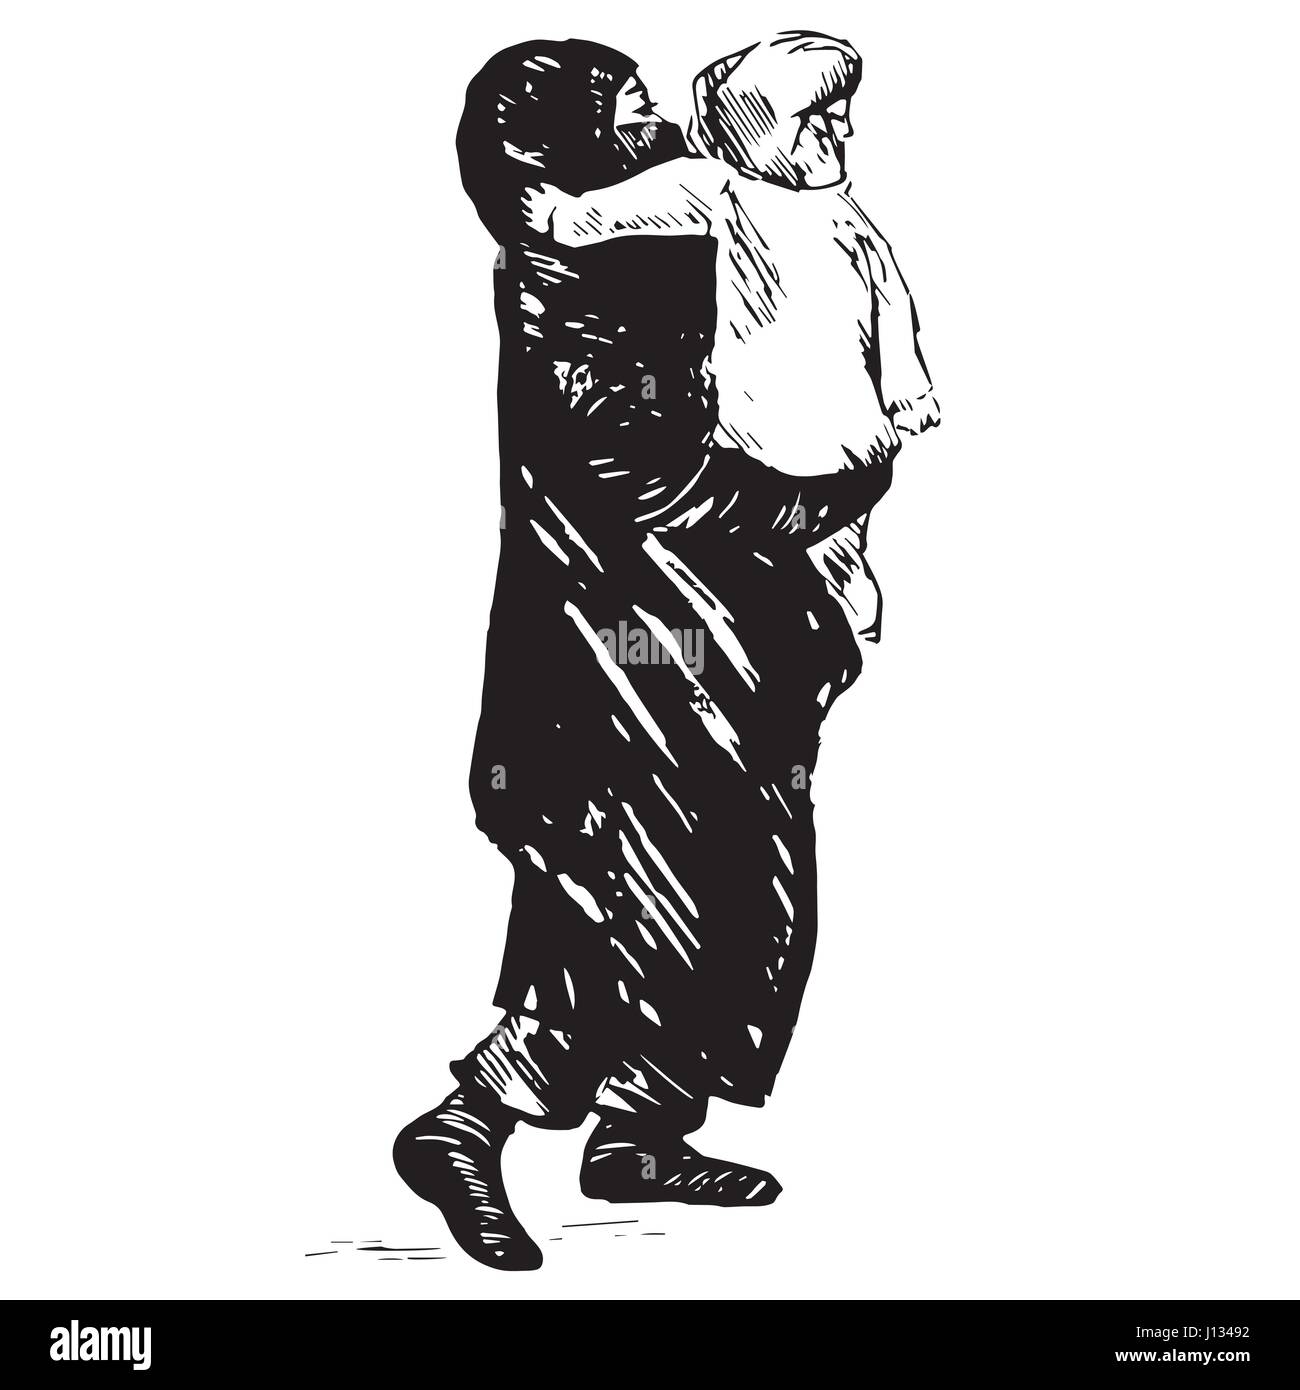 Muslimische Mutter in schwarzen Burka mit Kind in die Hände gehen, schwarz / weißen isolierten Hand gezeichnet Vektor-Illustration in Tusche-Zeichnung Pop-Art Stil Stock Vektor